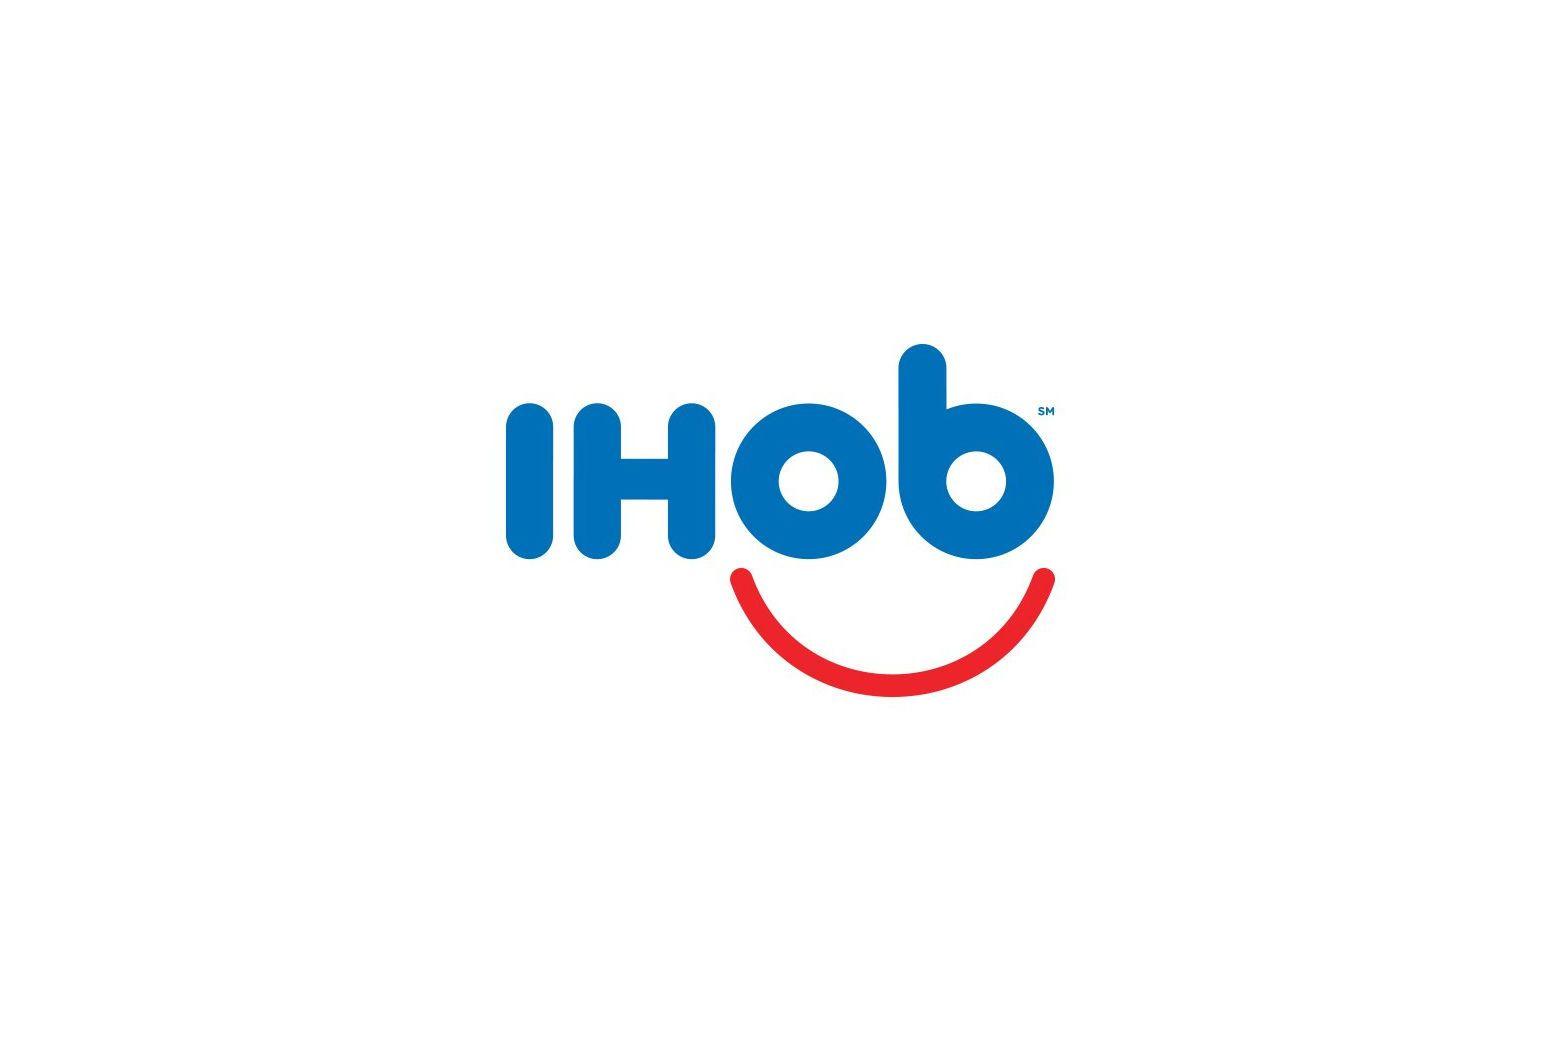 Ihob Logo - IHOP flips over burgers, changes 'p' to 'b' in logo | WTOP